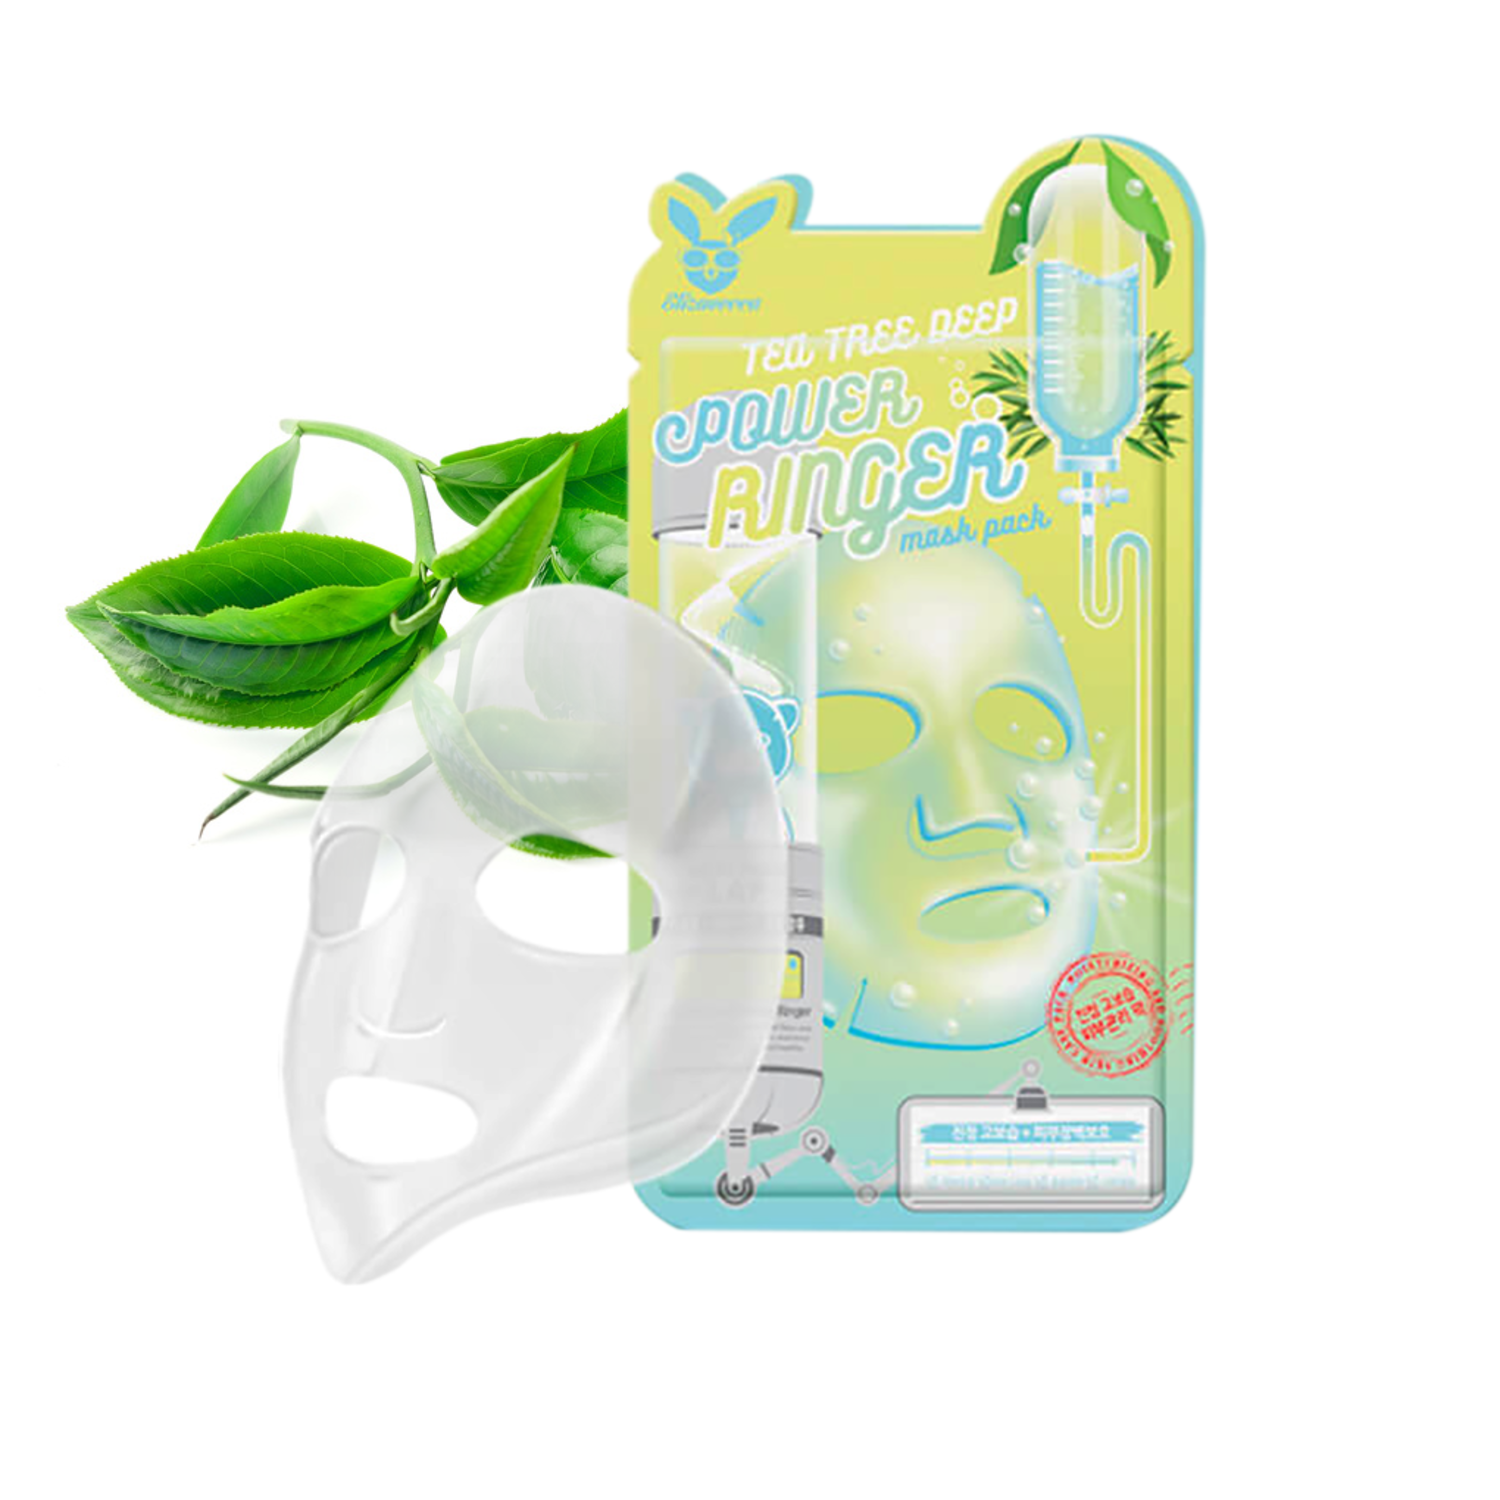  Elizavecca Tea Tree Deep Power Ringer Mask Pack  Тканевая маска для лица с экстрактом чайного дерева, 23мл. / 941907